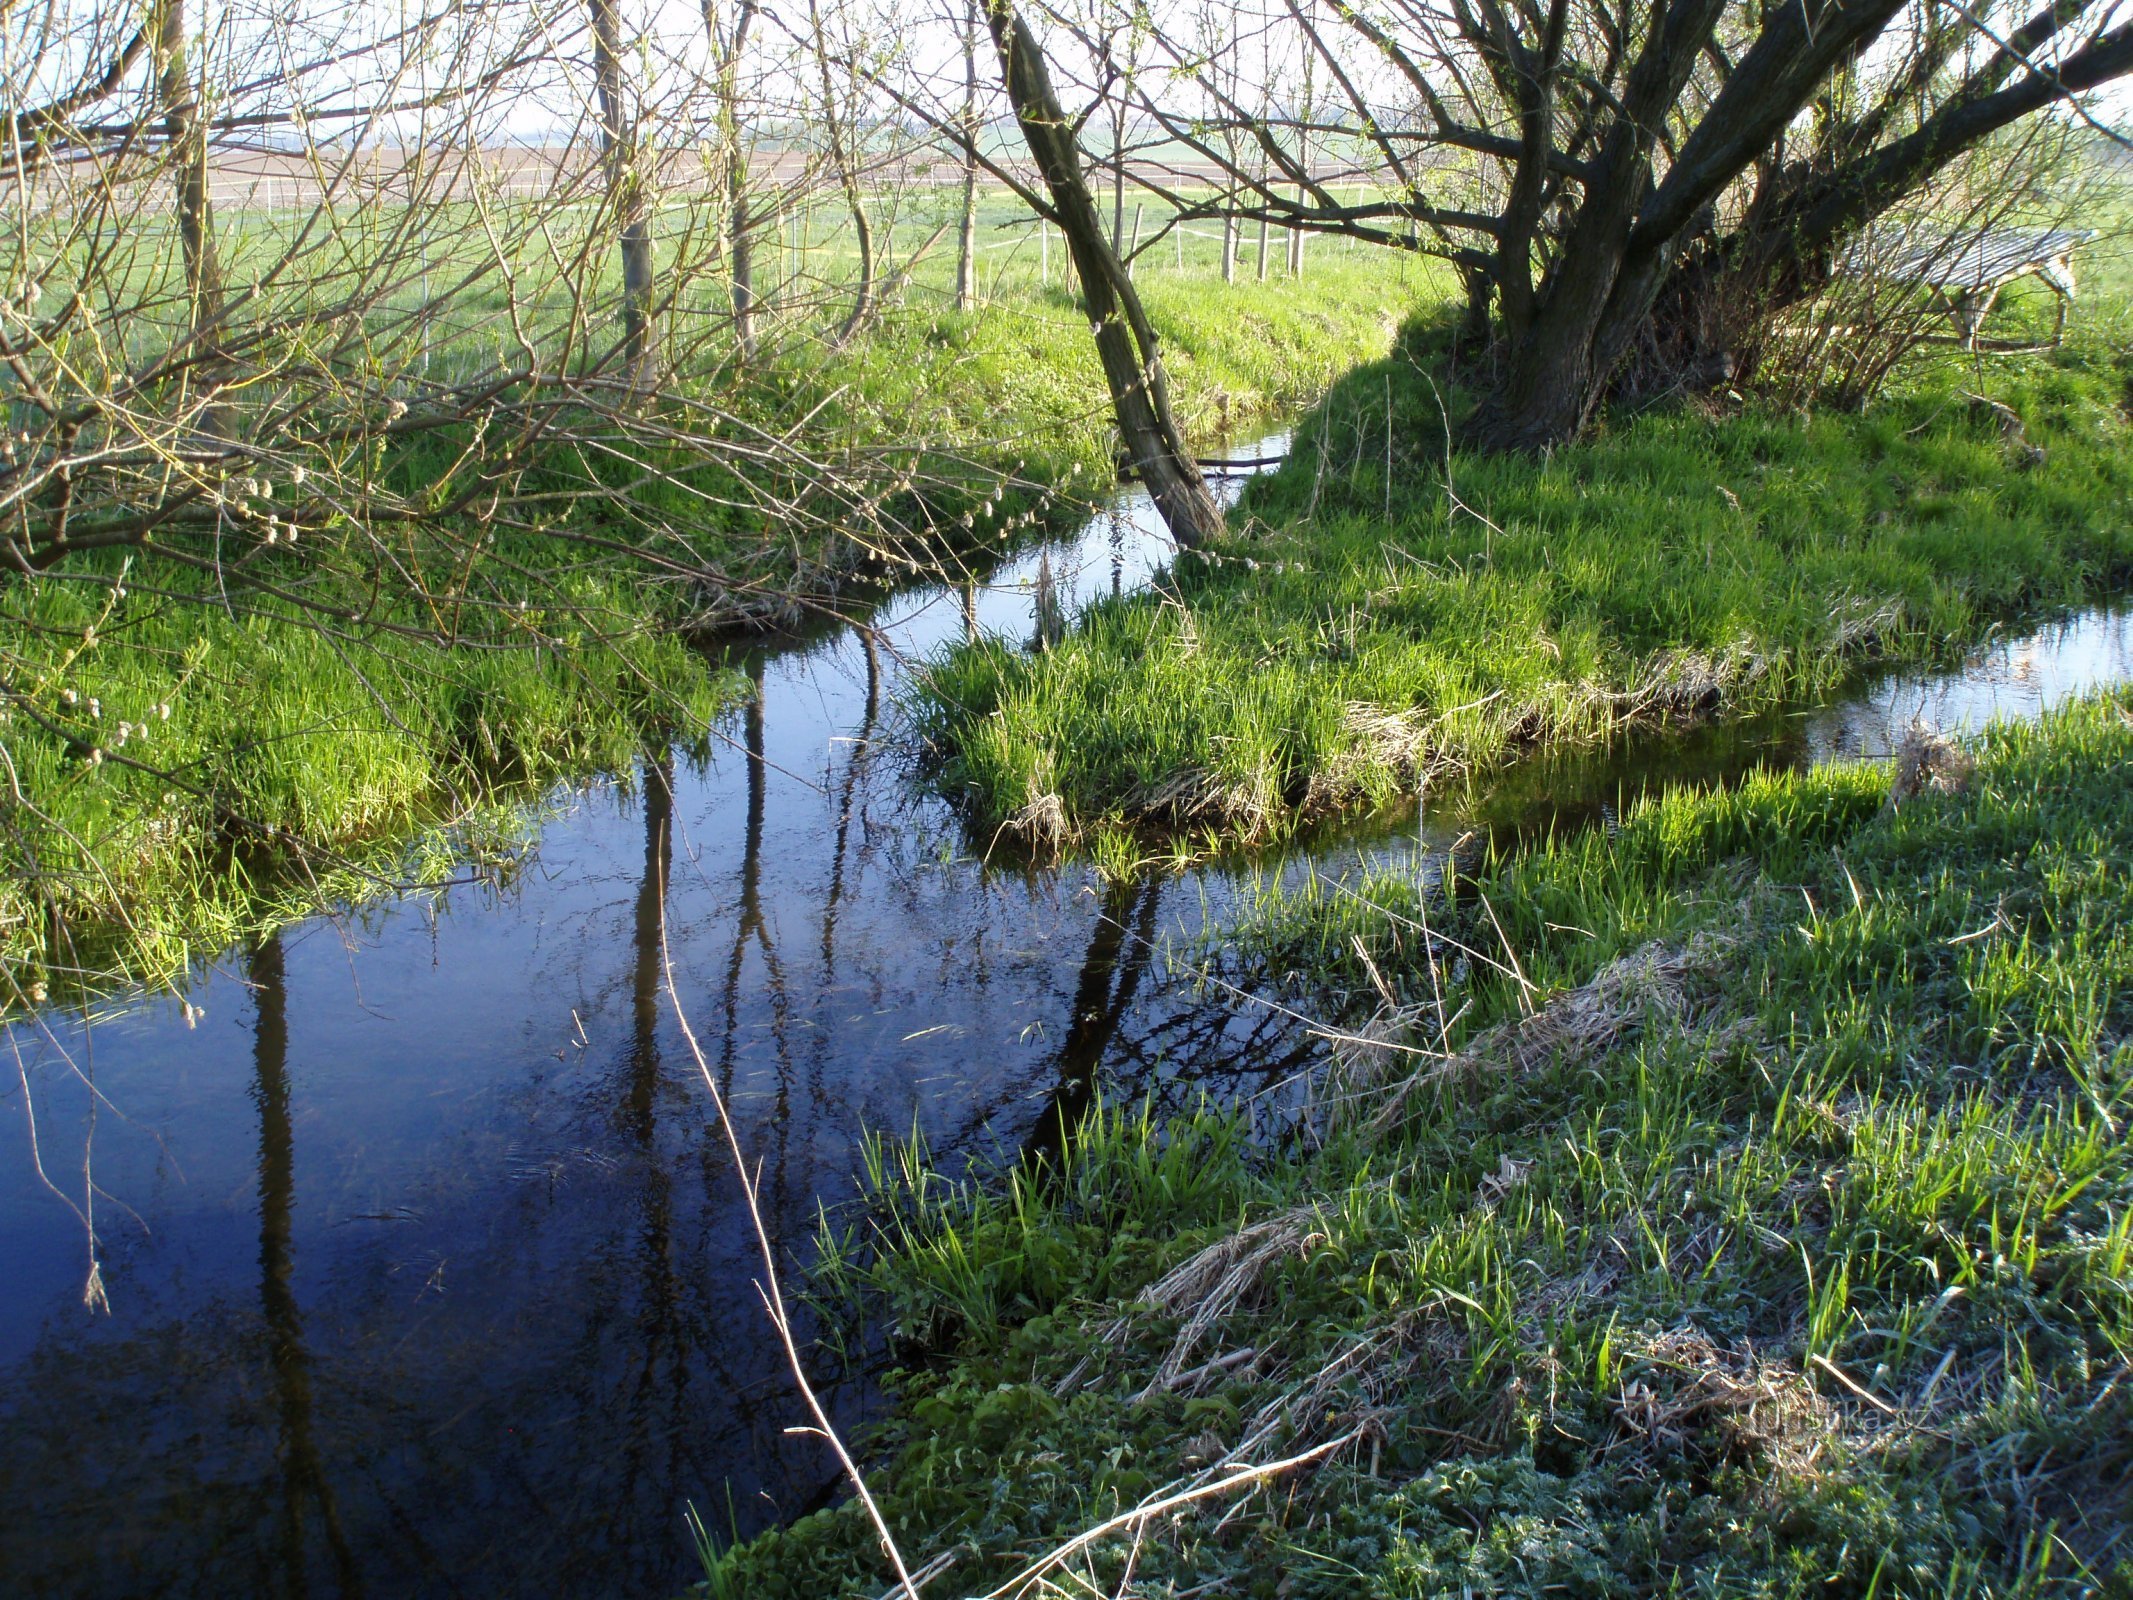 Confluenza dei torrenti Černilovského e Librantický, inizio del torrente Piletický (Rusek)